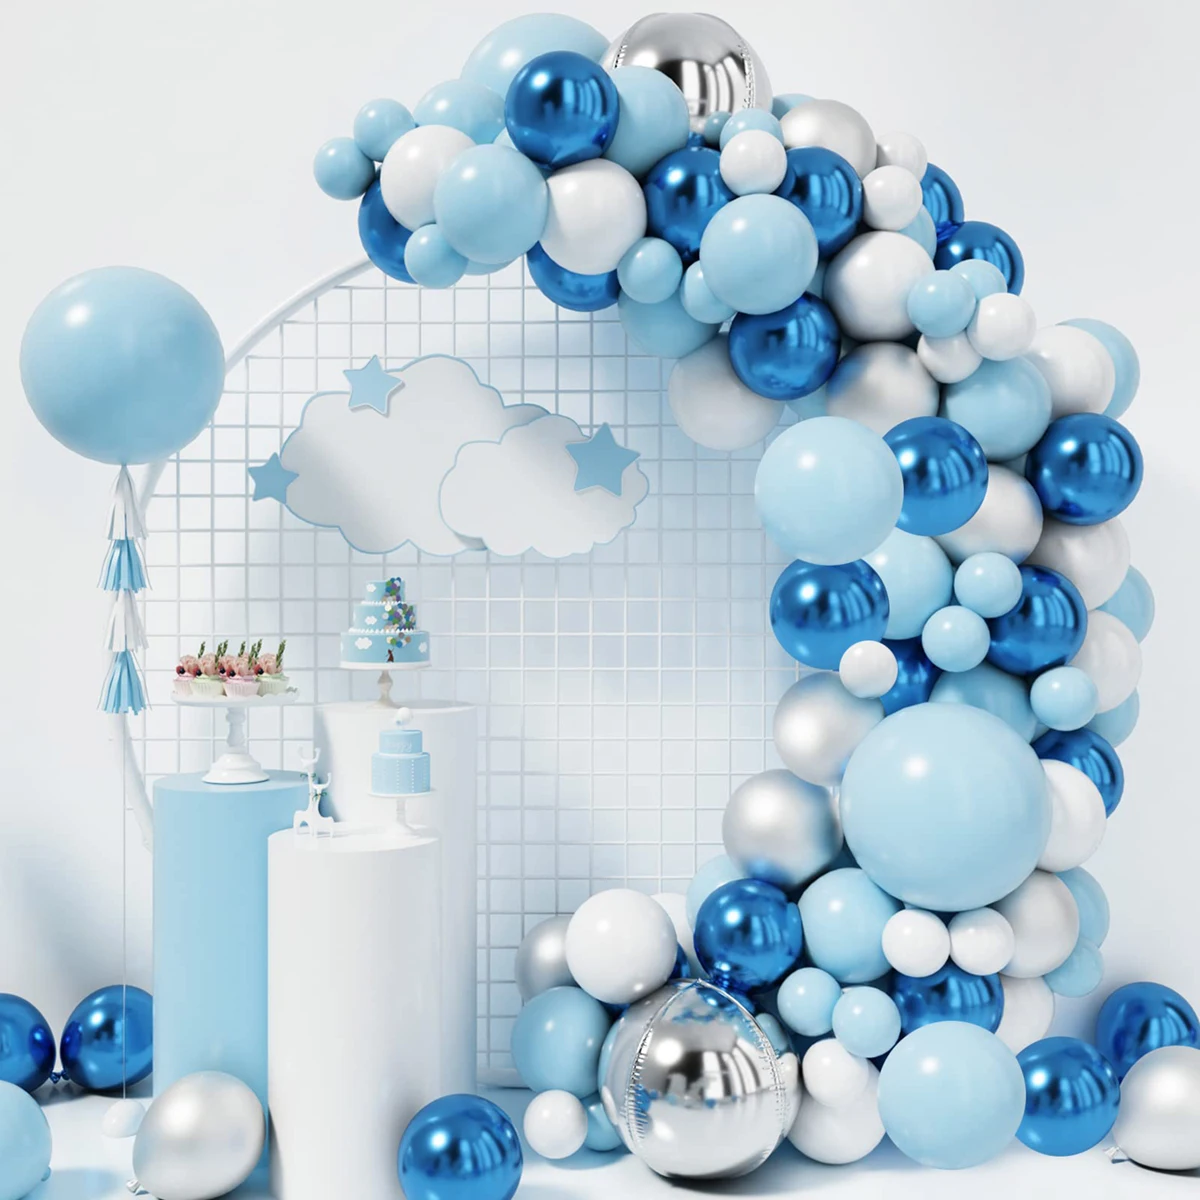 Kit d'arche de ballon bleu marine argenté, 125pcs ballons bleu marine argent  blanc et ballons confettis argentés guirlande pour la remise des diplômes  de mariage Baby Shower Anni